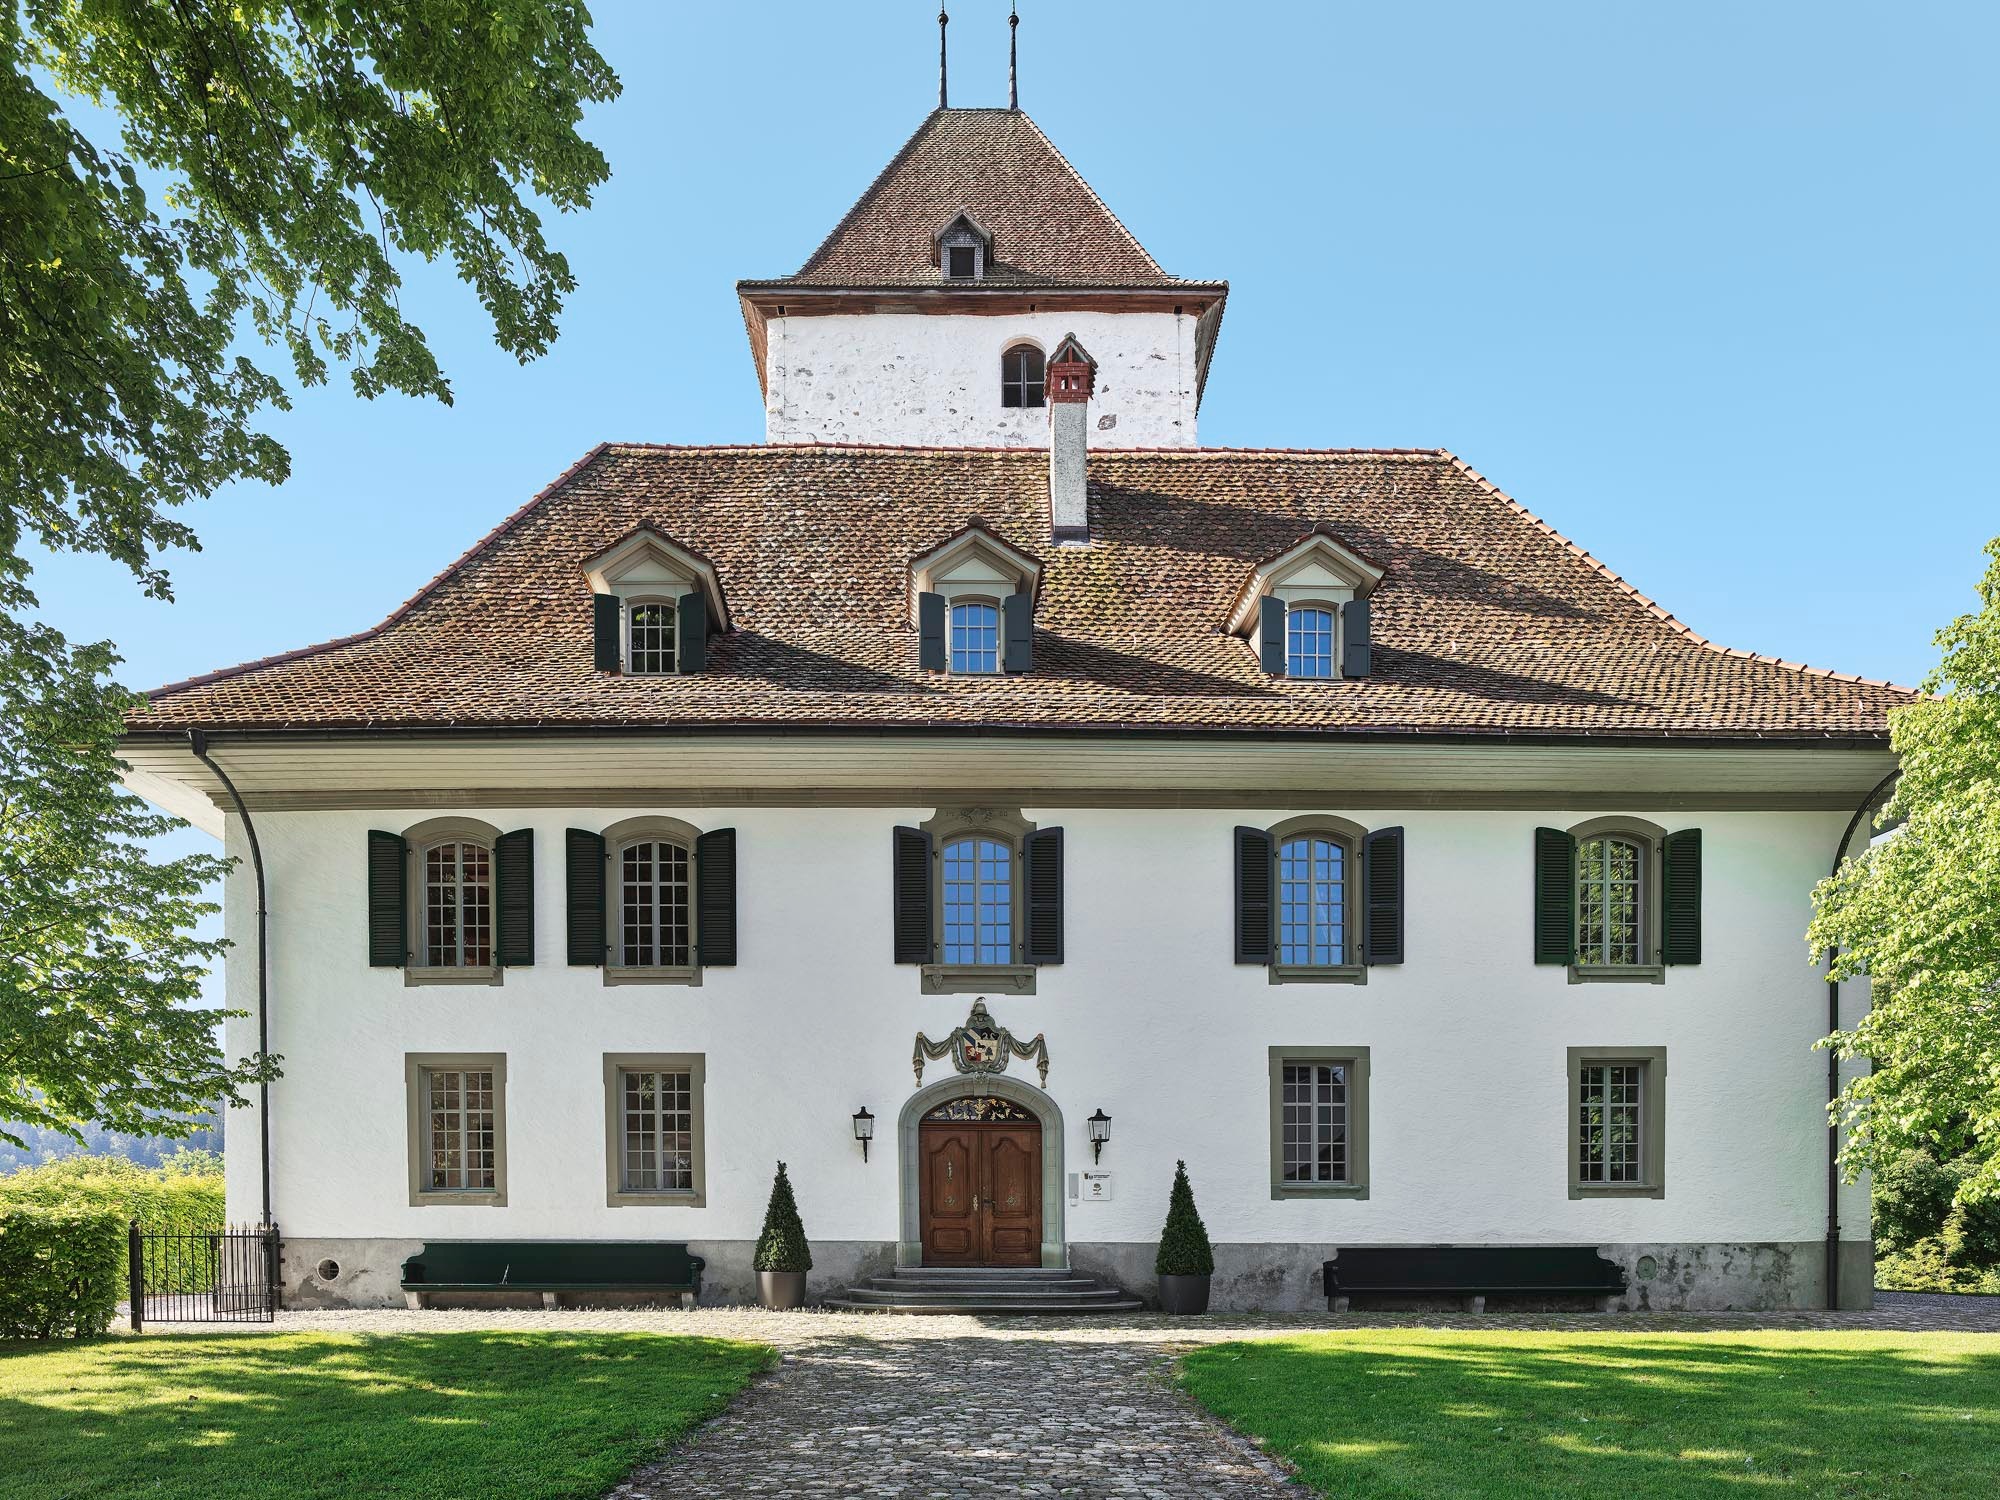 Unser Wenger News erscheint 2 Mal pro Jahr. Wir informieren Sie über aktuelle Themen unserer Firma - diesmal mit Wohnsiedlung Telli in Aarau, Schloss Wyl und unserem Kundendienst.